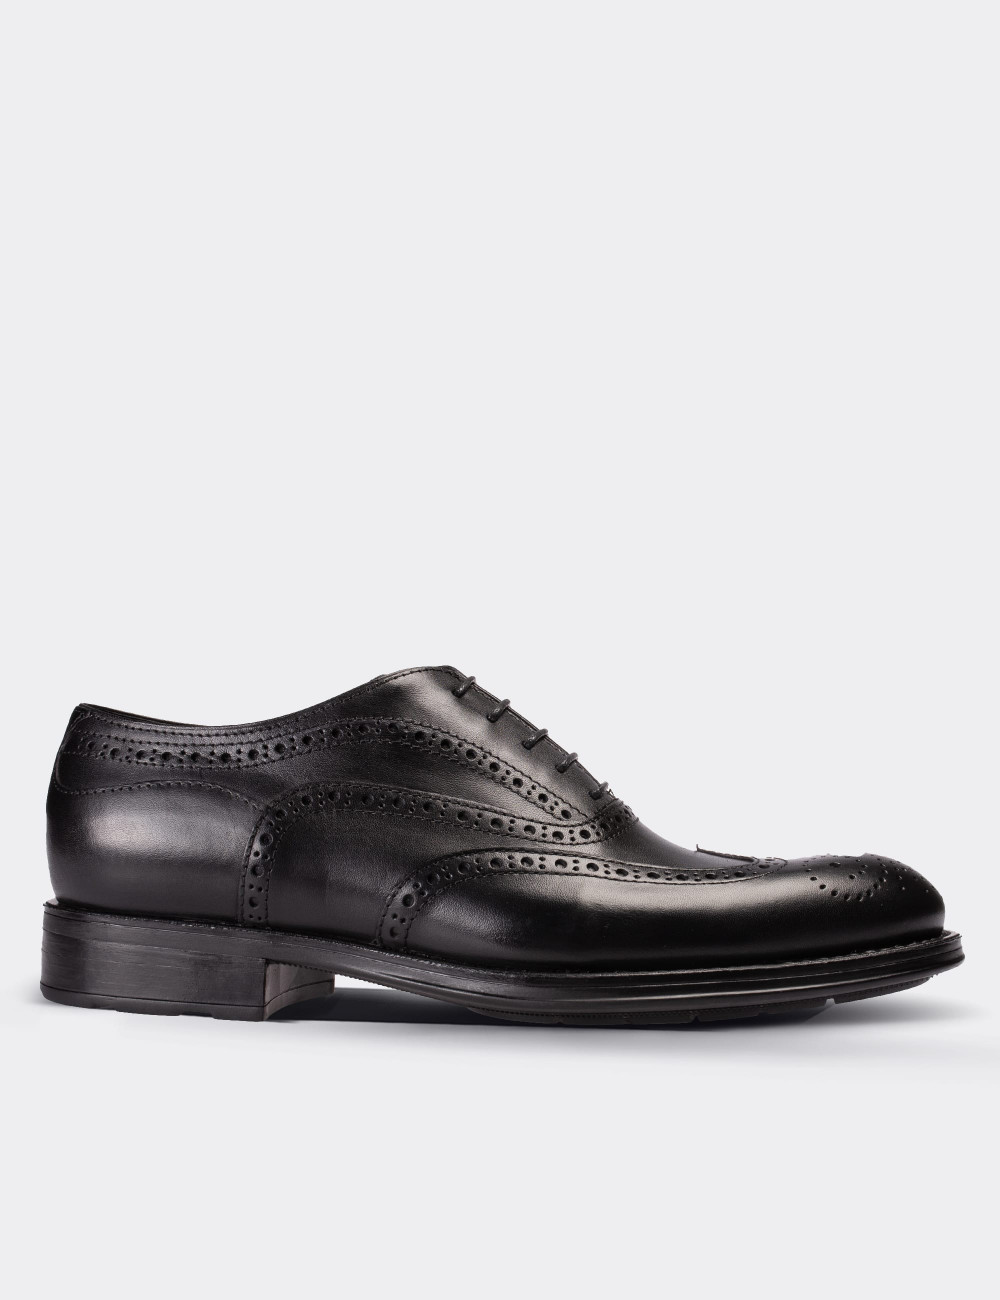 Hakiki Deri Siyah Klasik Erkek Ayakkabı - 01511MSYHC02